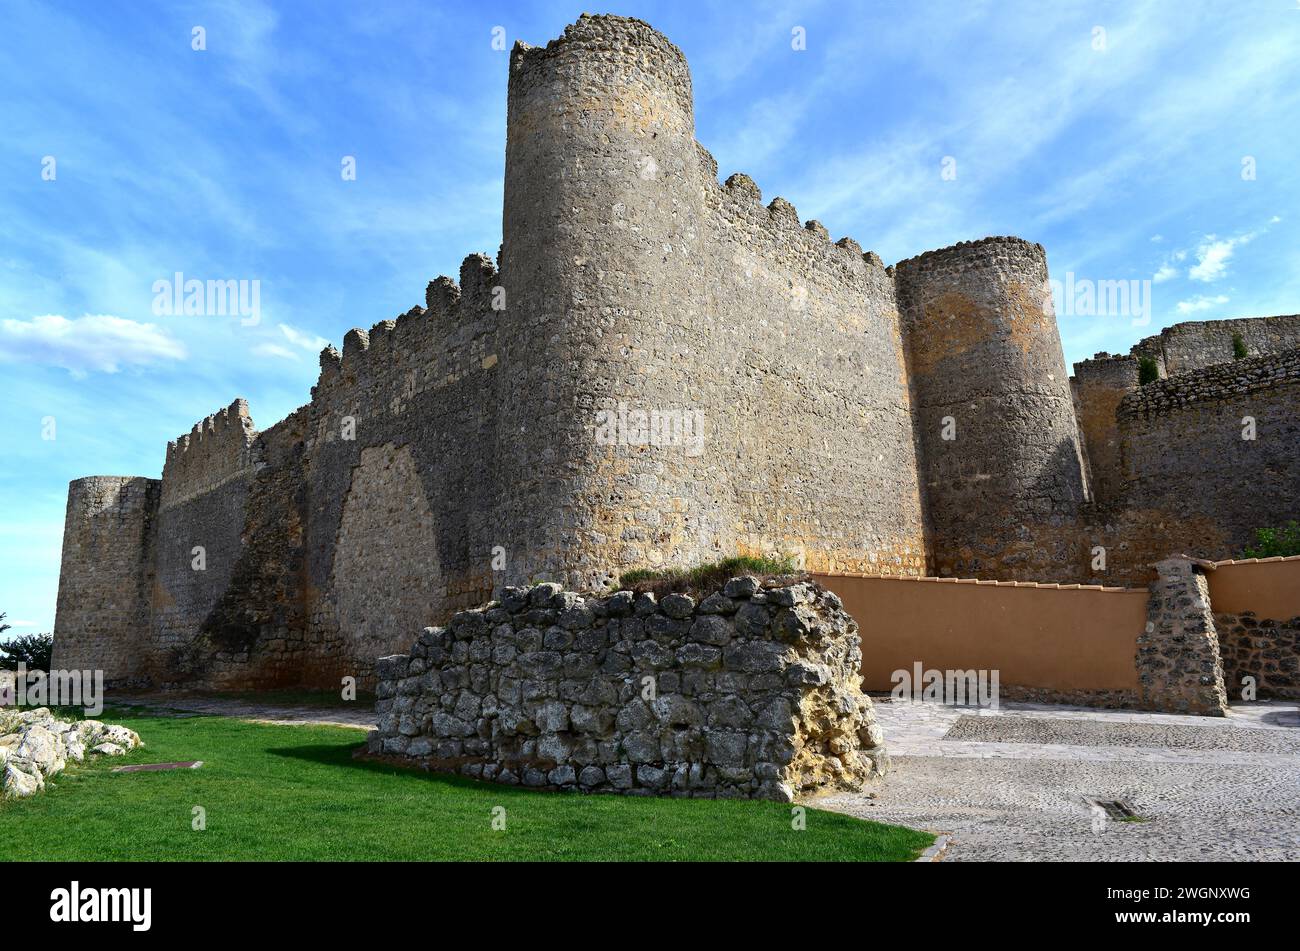 Urueña, medieval walled town, castle (13th century). Conjunto Historico-Artistico. Valladolid province, Castilla y Leon, Spain. Stock Photo